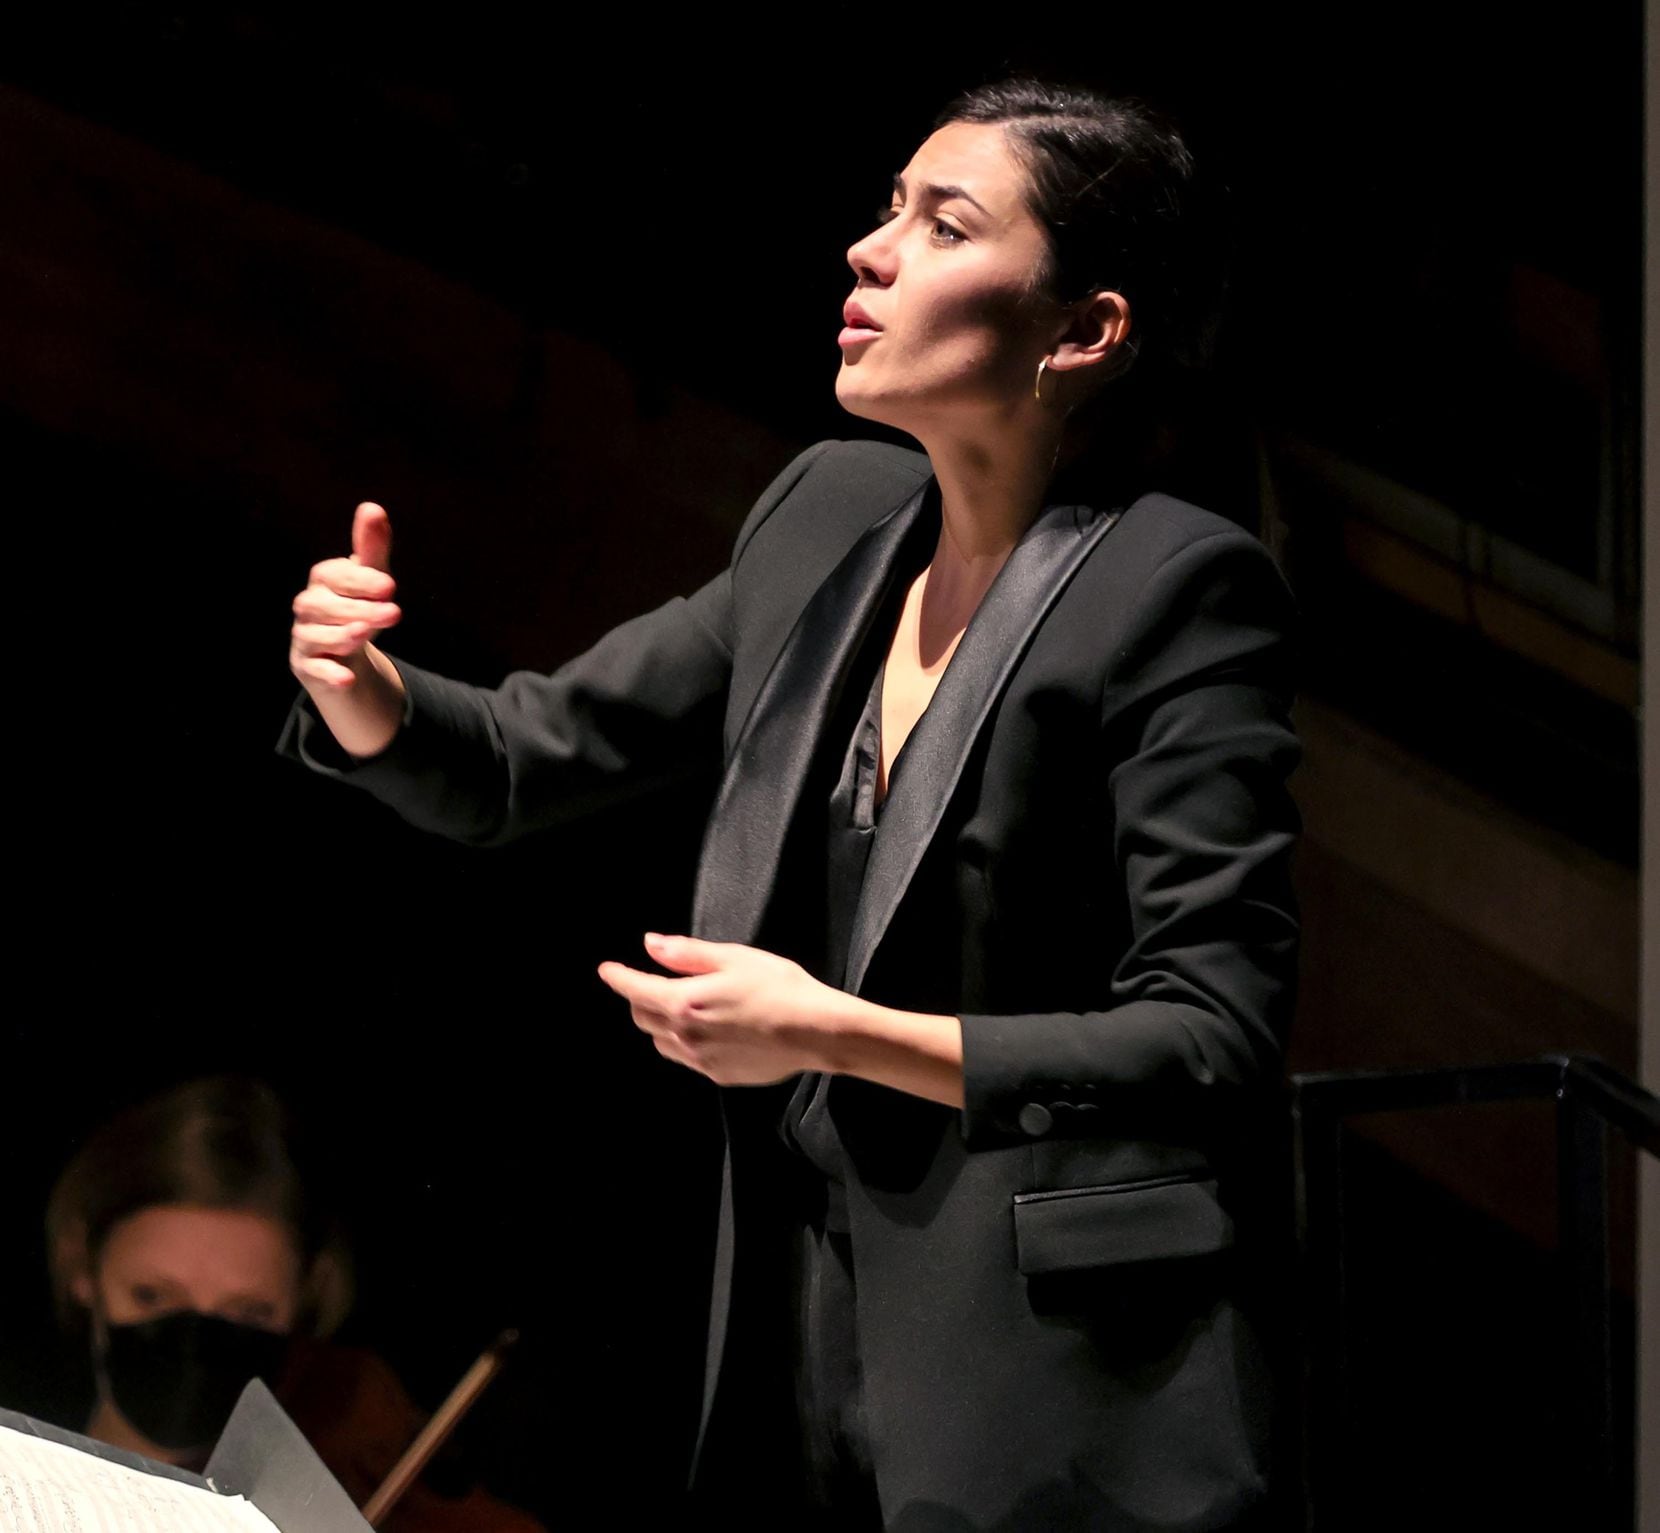 El Instituto Hart en la Ópera de Dallas destaca a cuatro líderes femeninas en ascenso